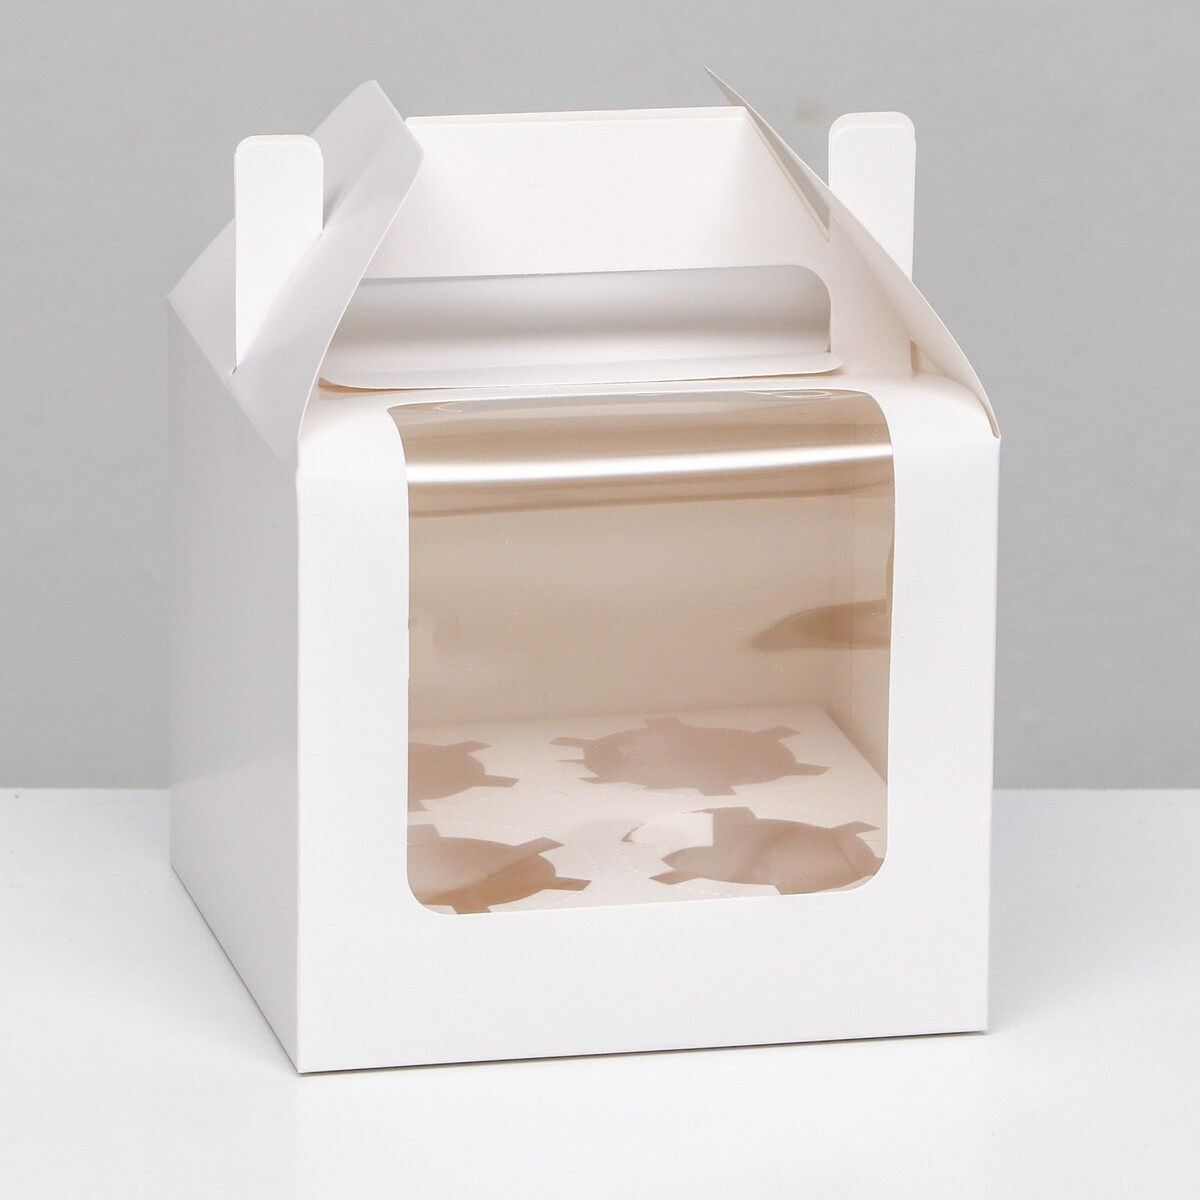 Кондитерская складная коробка для 4 капкейков, белая 16 х 16 х 14 см кондитерская складная коробка для 9 капкейков белая 23 5 x 23 x 14 см